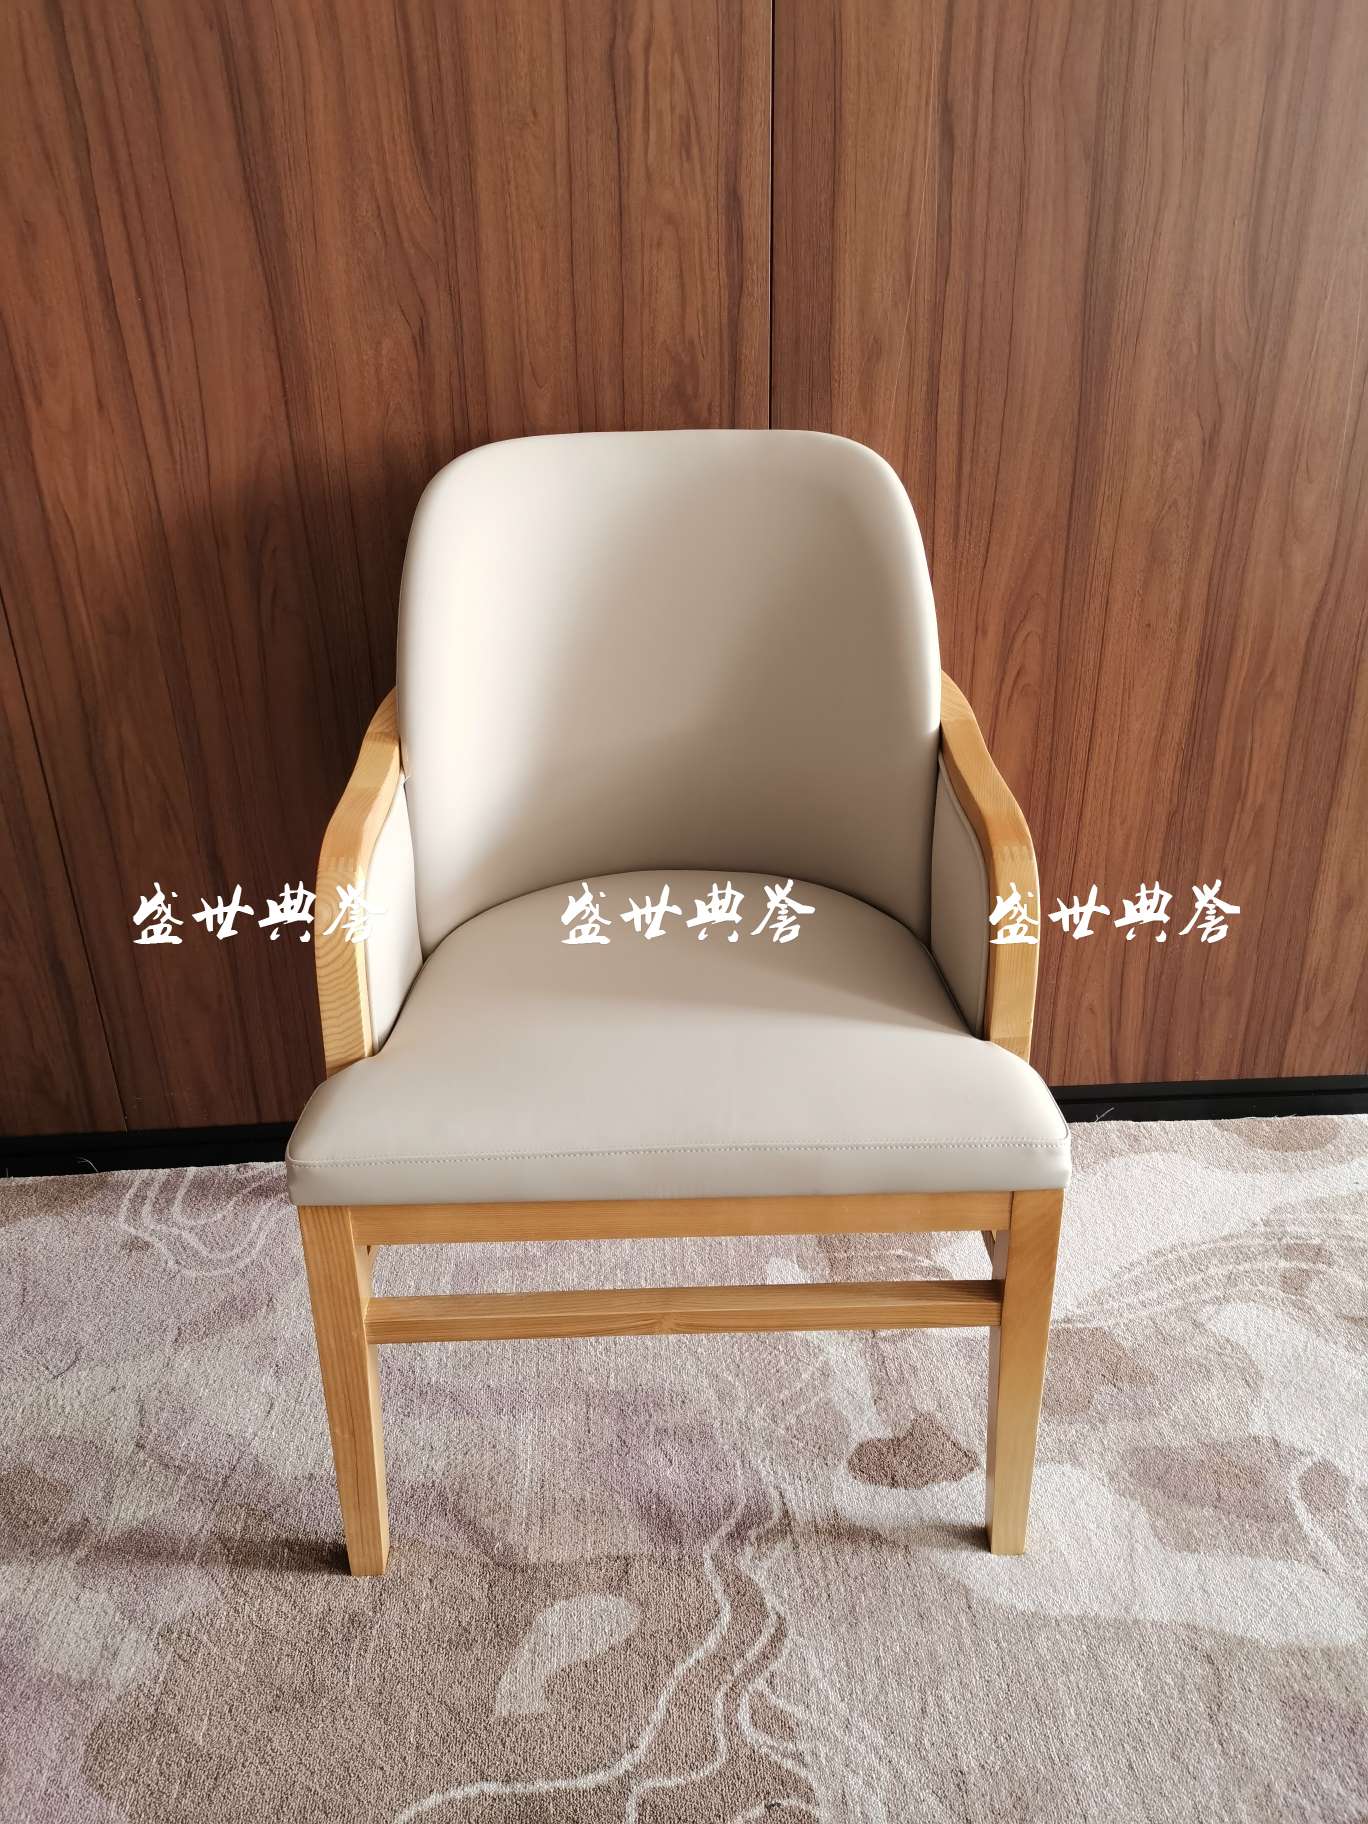 上海星级酒店实木餐桌椅国际大饭店包厢实木藤编椅子白蜡木扶手藤椅详情图1